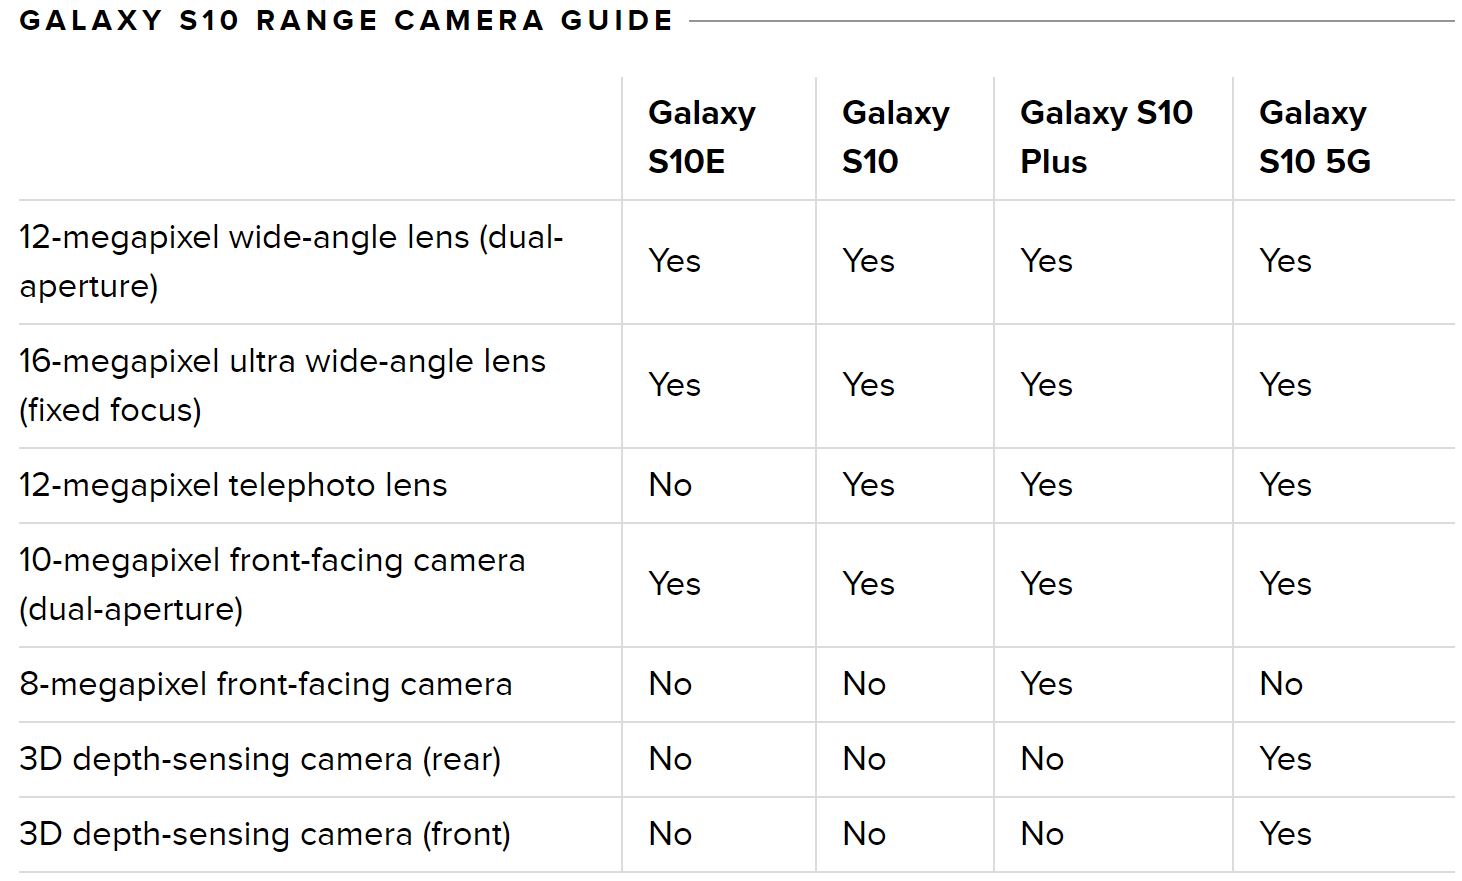 Galaxy S10 cams.JPG